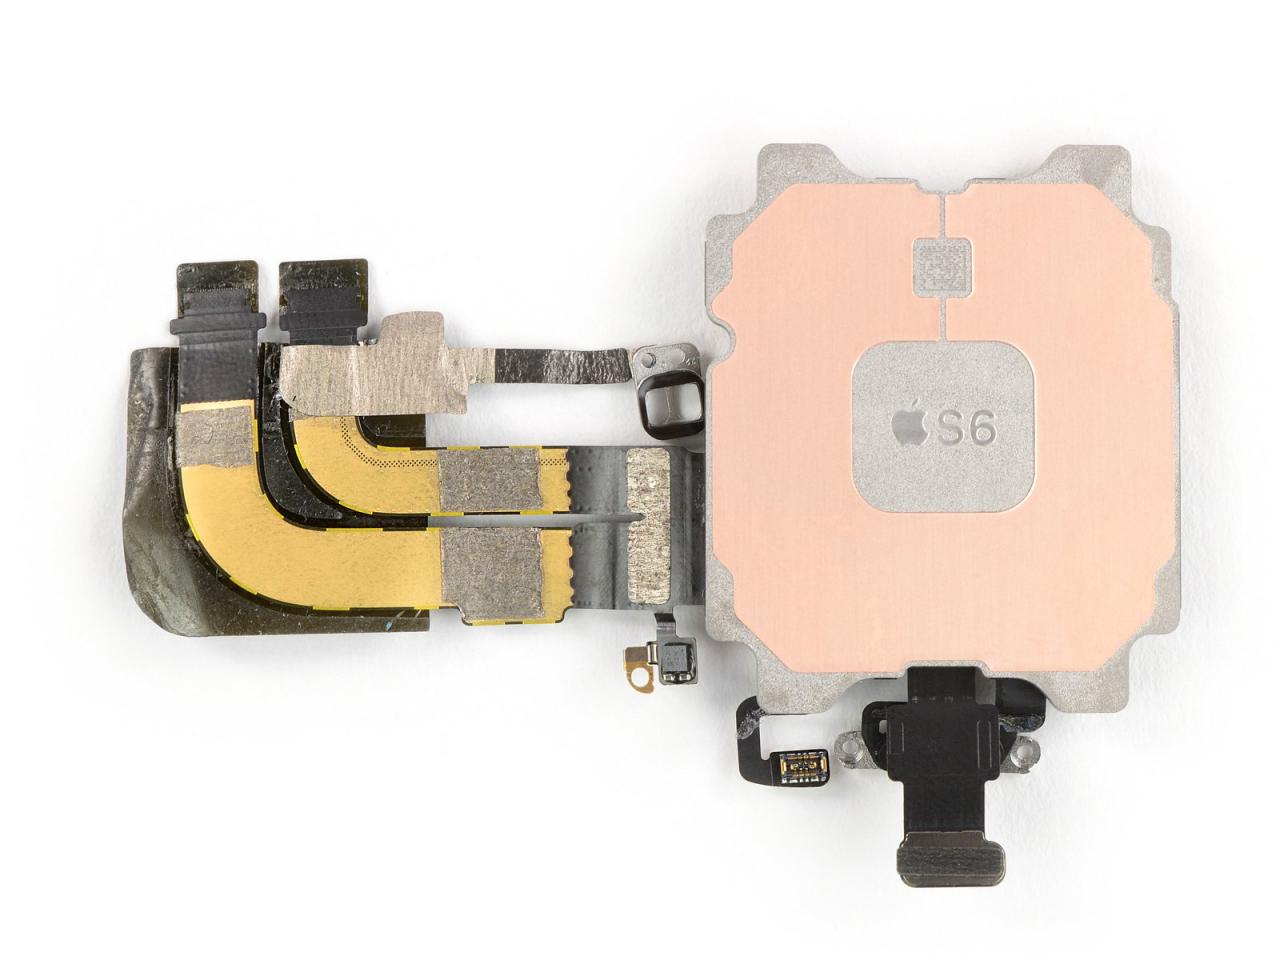 多图 |iFixit 拆解 Apple Watch Series 6：电池容量增加